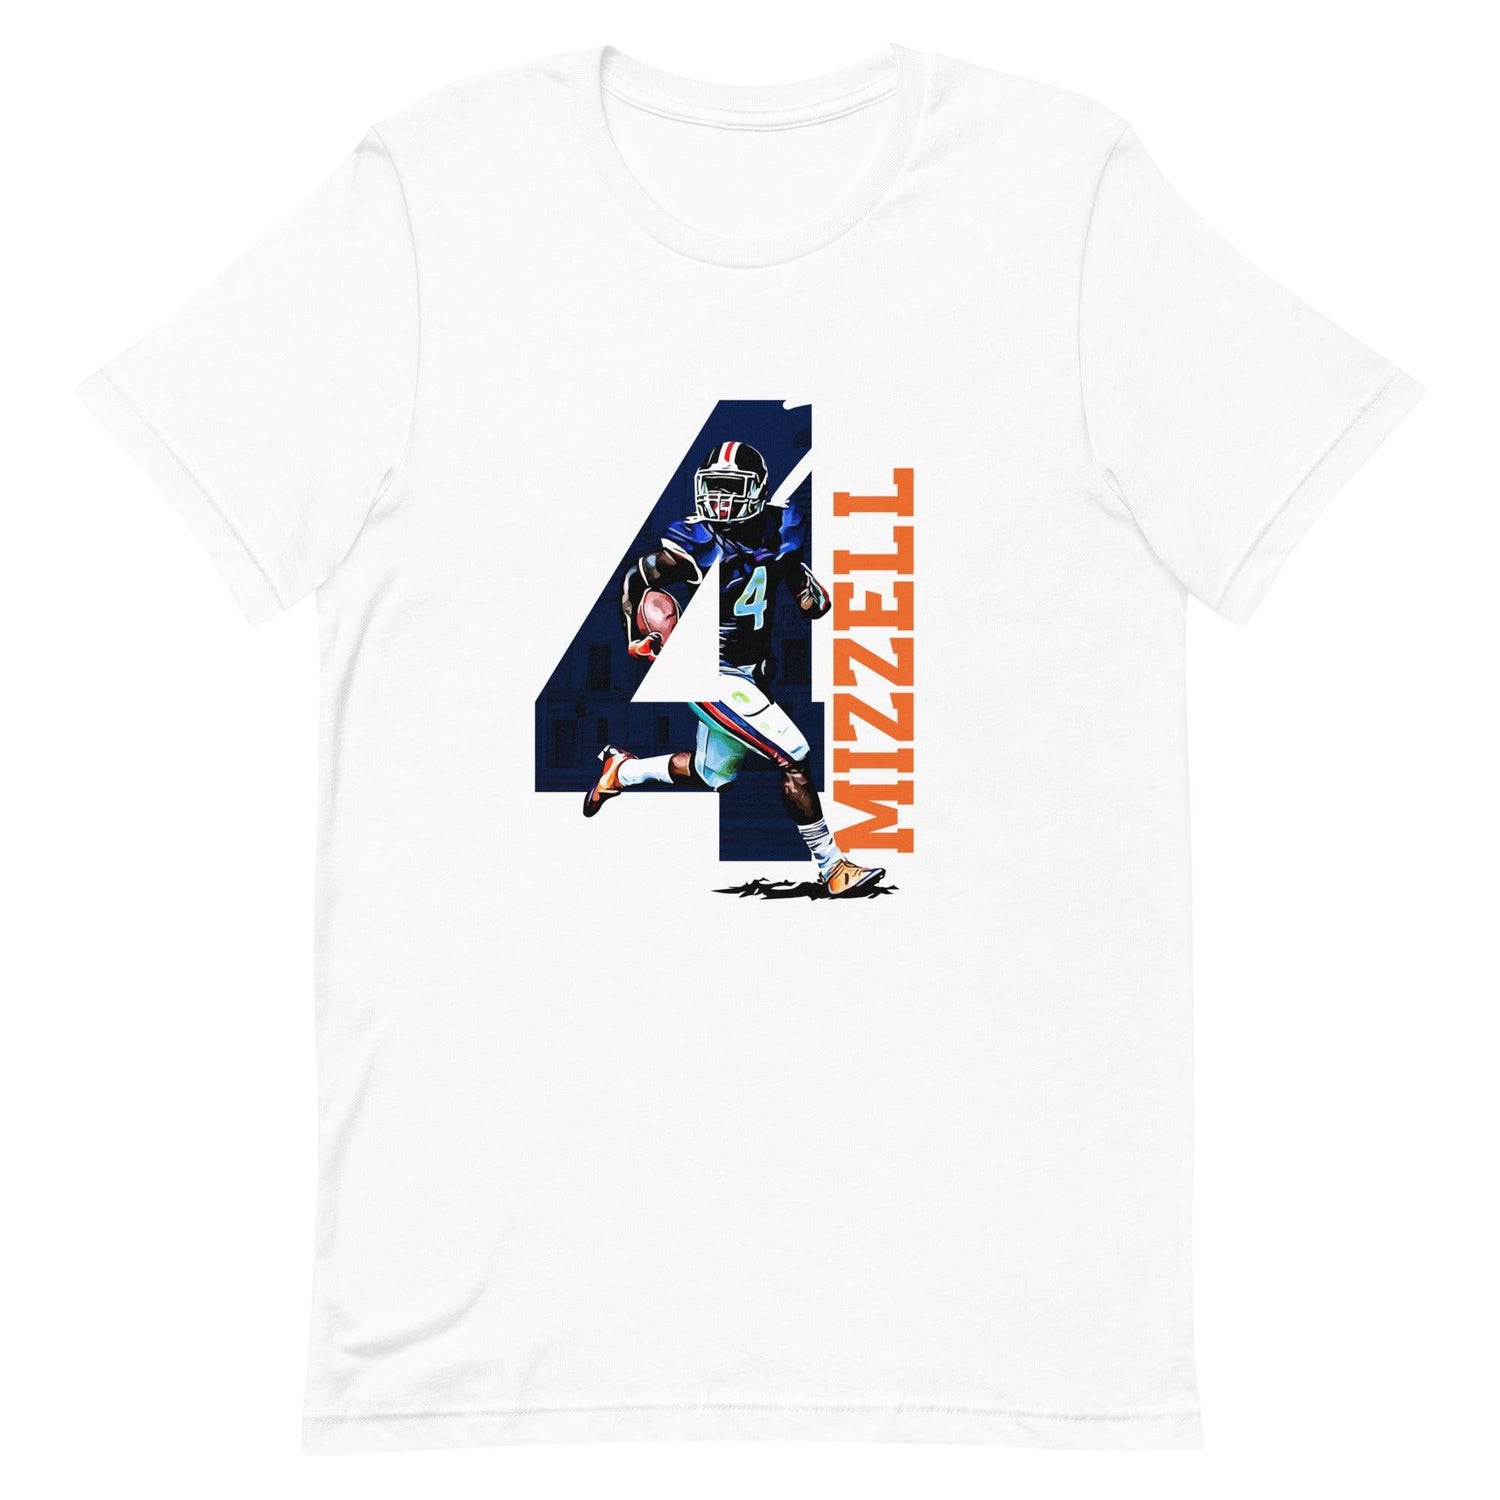 Taquan Mizzell Sr. "4" t-shirt - Fan Arch